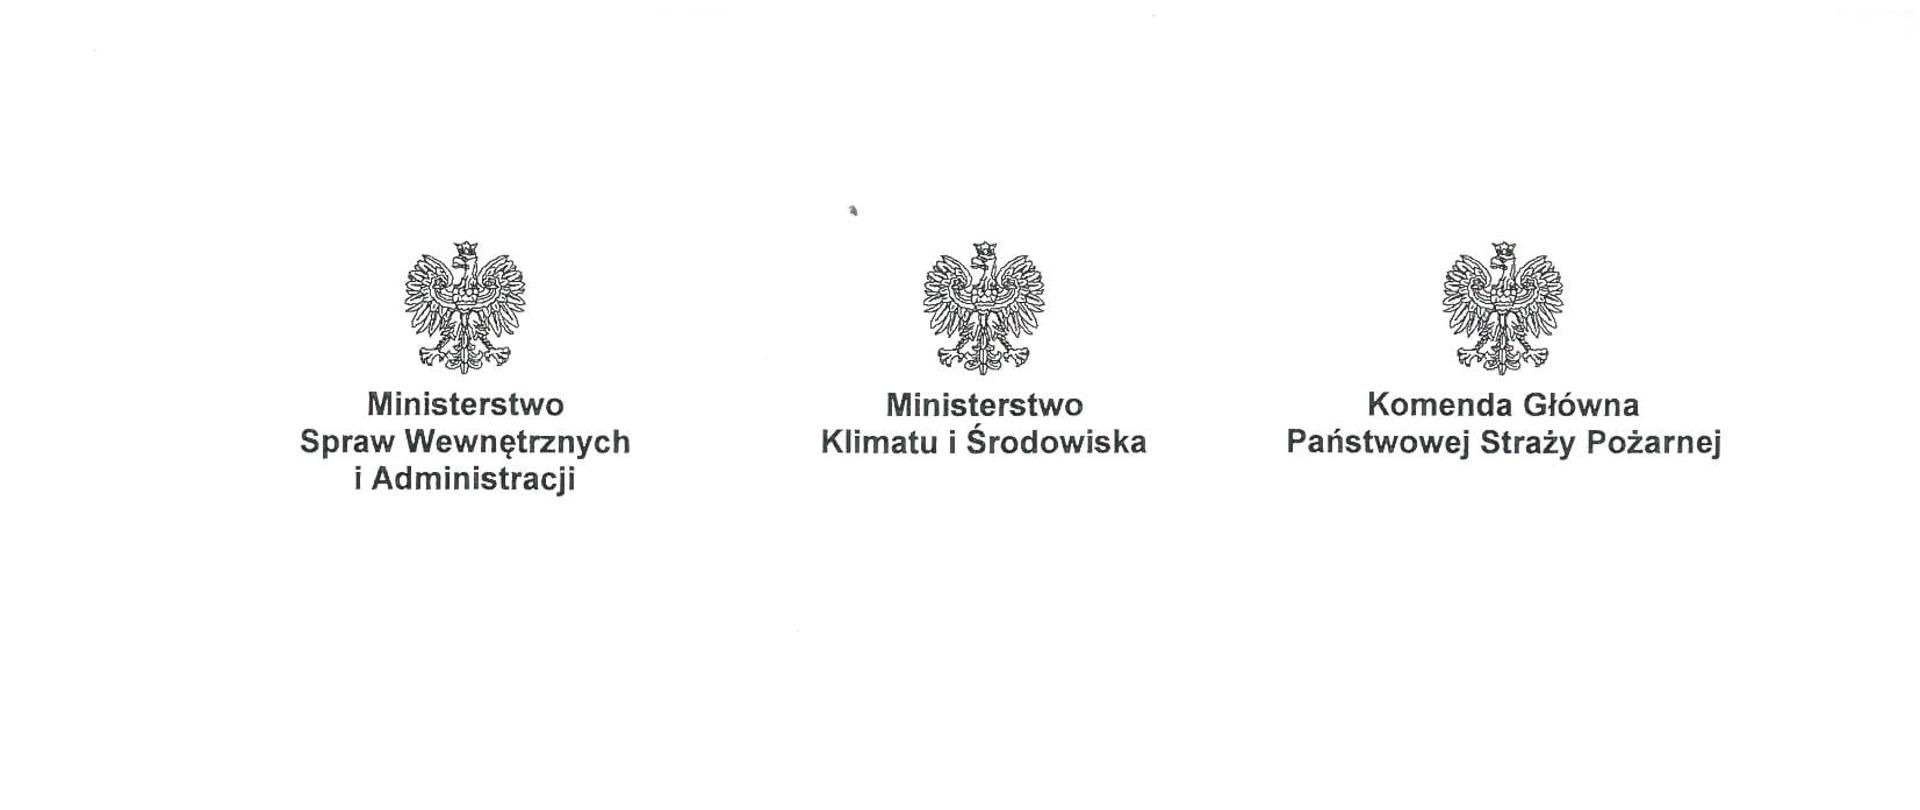 Konsultacje społeczne projektu ustawy o OSP oraz uroczystość wręczenia aktów włączenia do KSRG i promes dla jednostek OSP w województwie mazowieckim